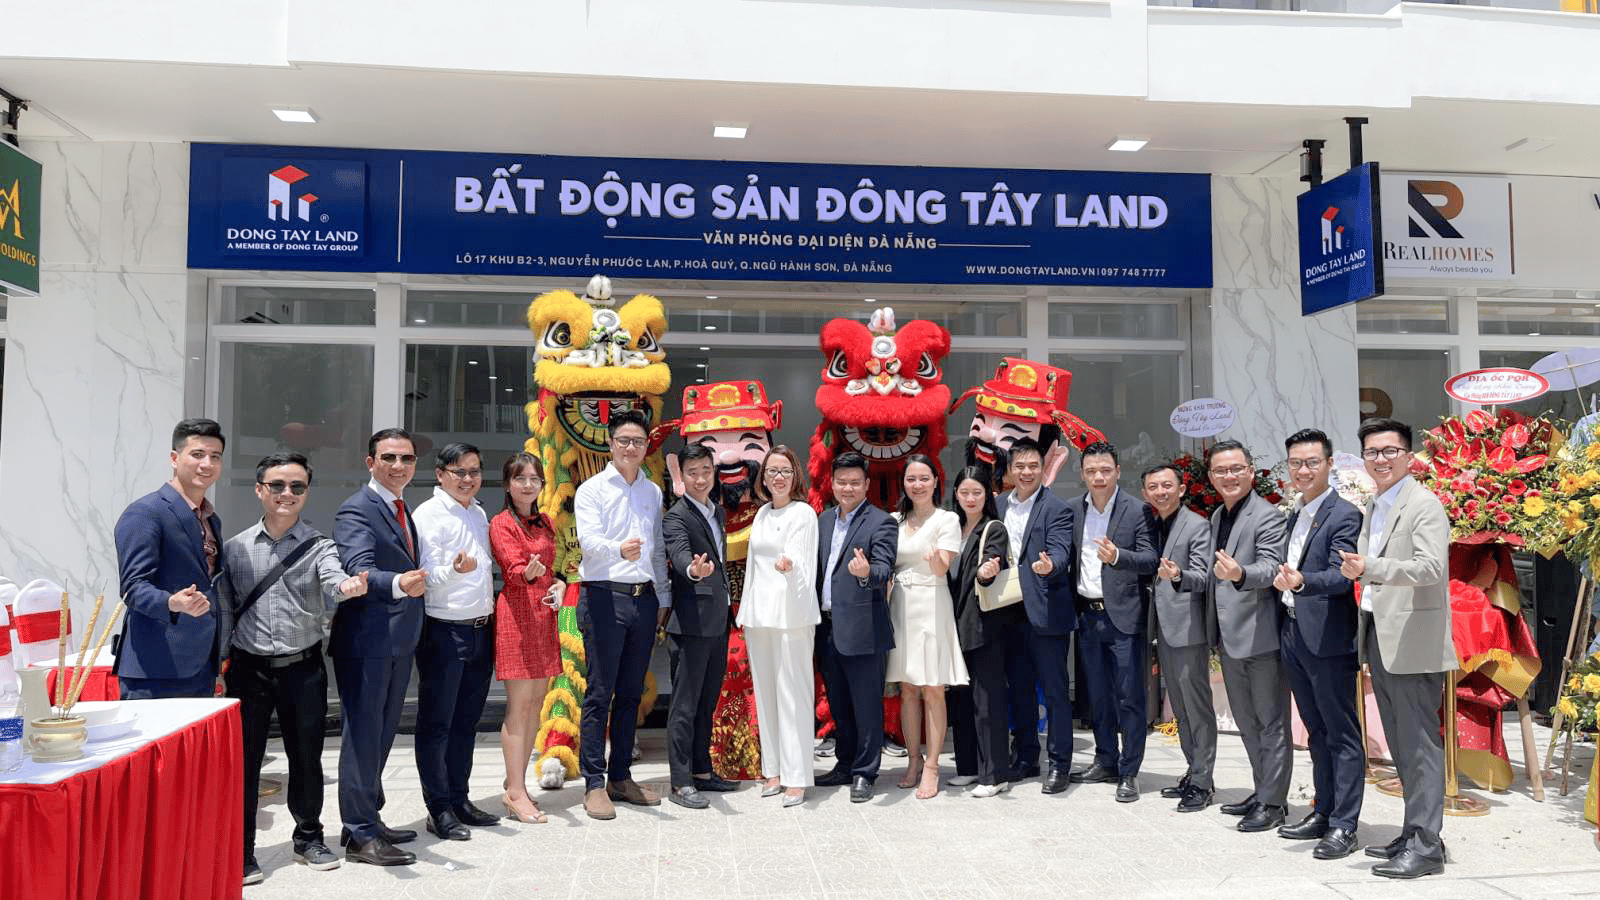 Đông Tây Land khai trương chi nhánh mới tại Đà Nẵng, mở rộng hợp tác và phát triển toàn diện